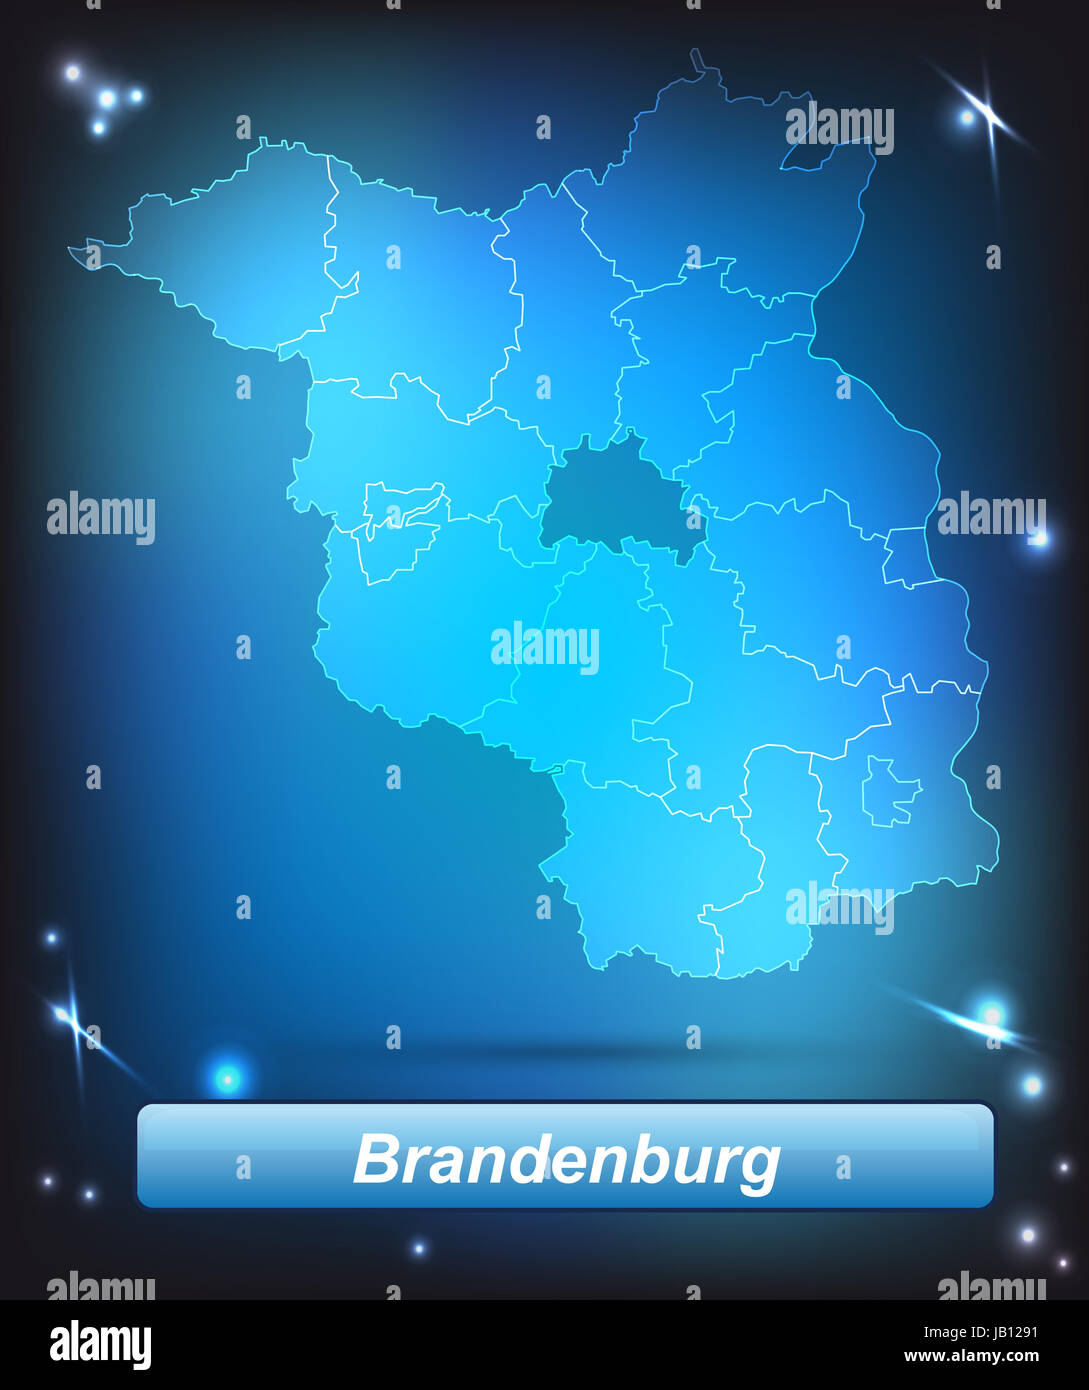 Brandeburgo in Deutschland als Grenzkarte mit Grenzen als leuchtende Karte. Durch die ansprechende Gestaltung fügt sich die Karte perfekt in Ihr Vorhaben ein. Foto Stock